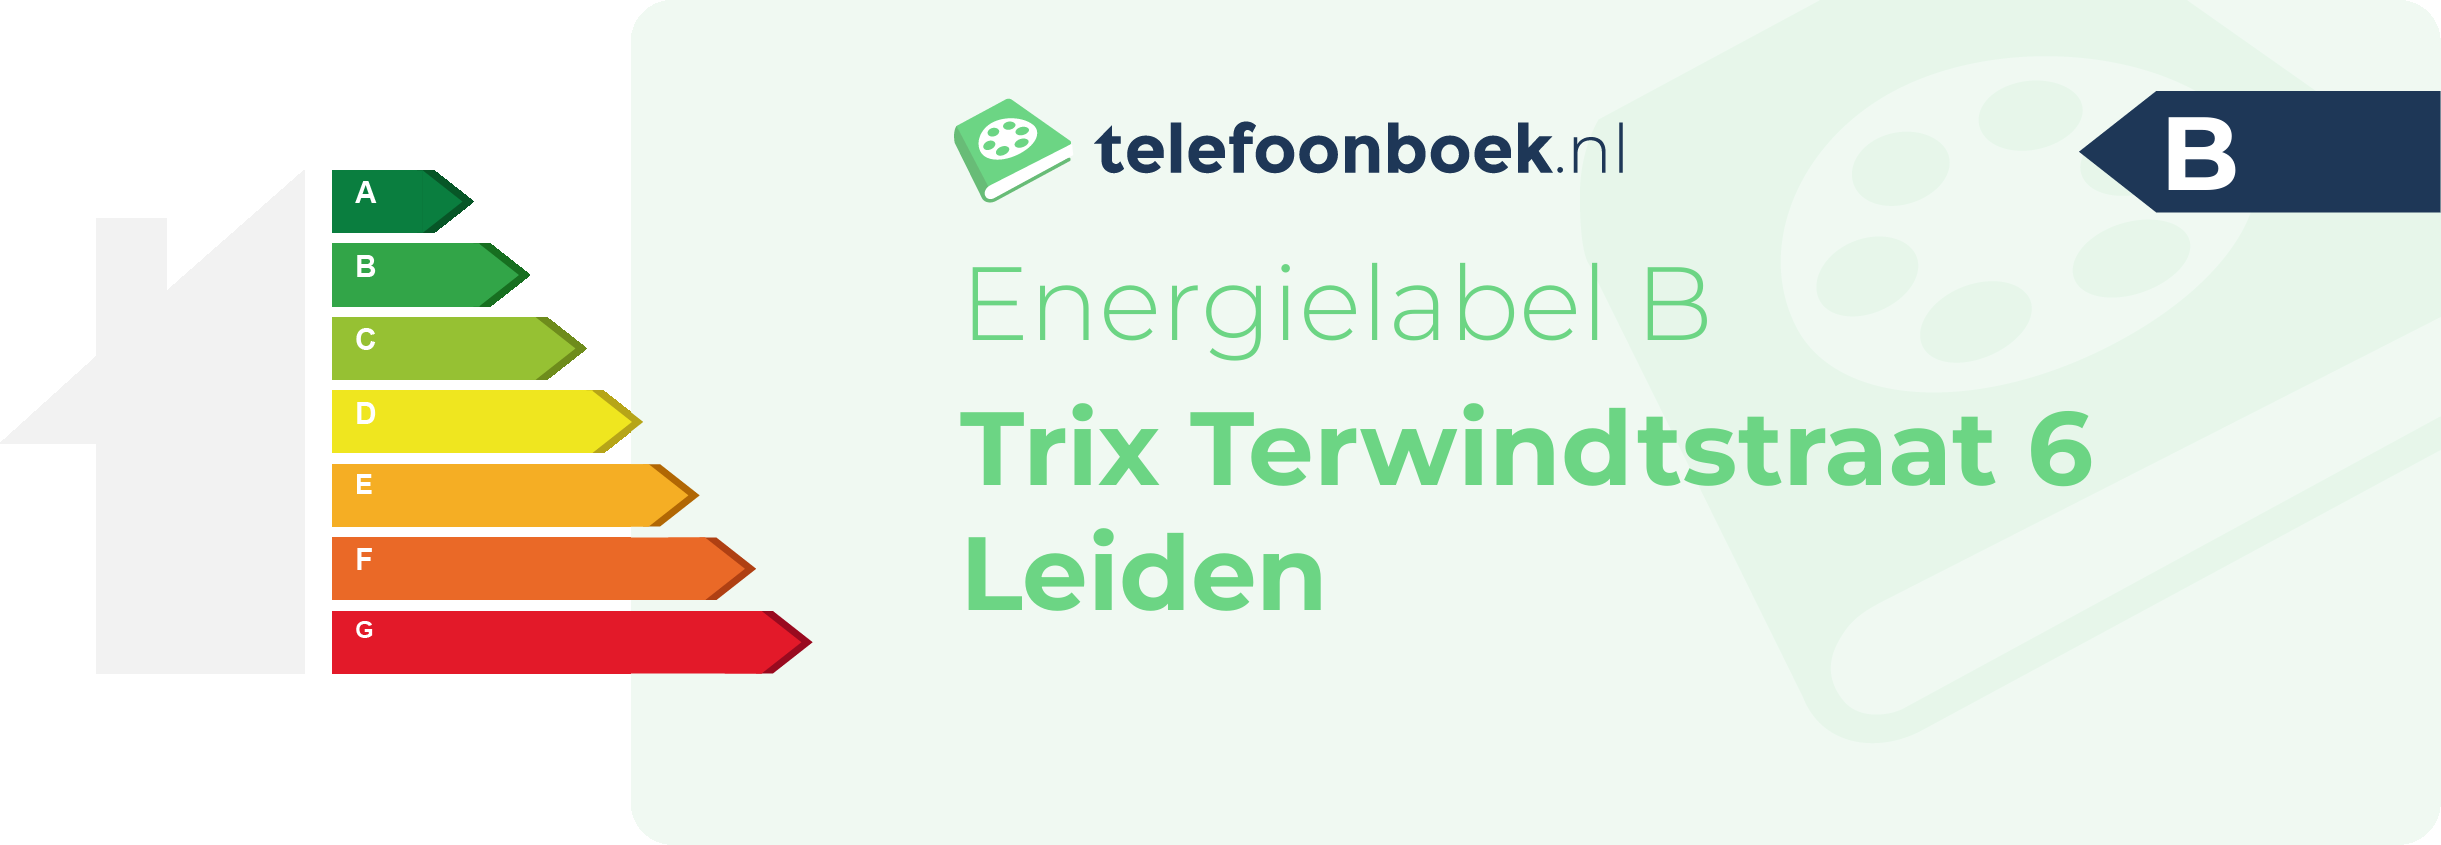 Energielabel Trix Terwindtstraat 6 Leiden